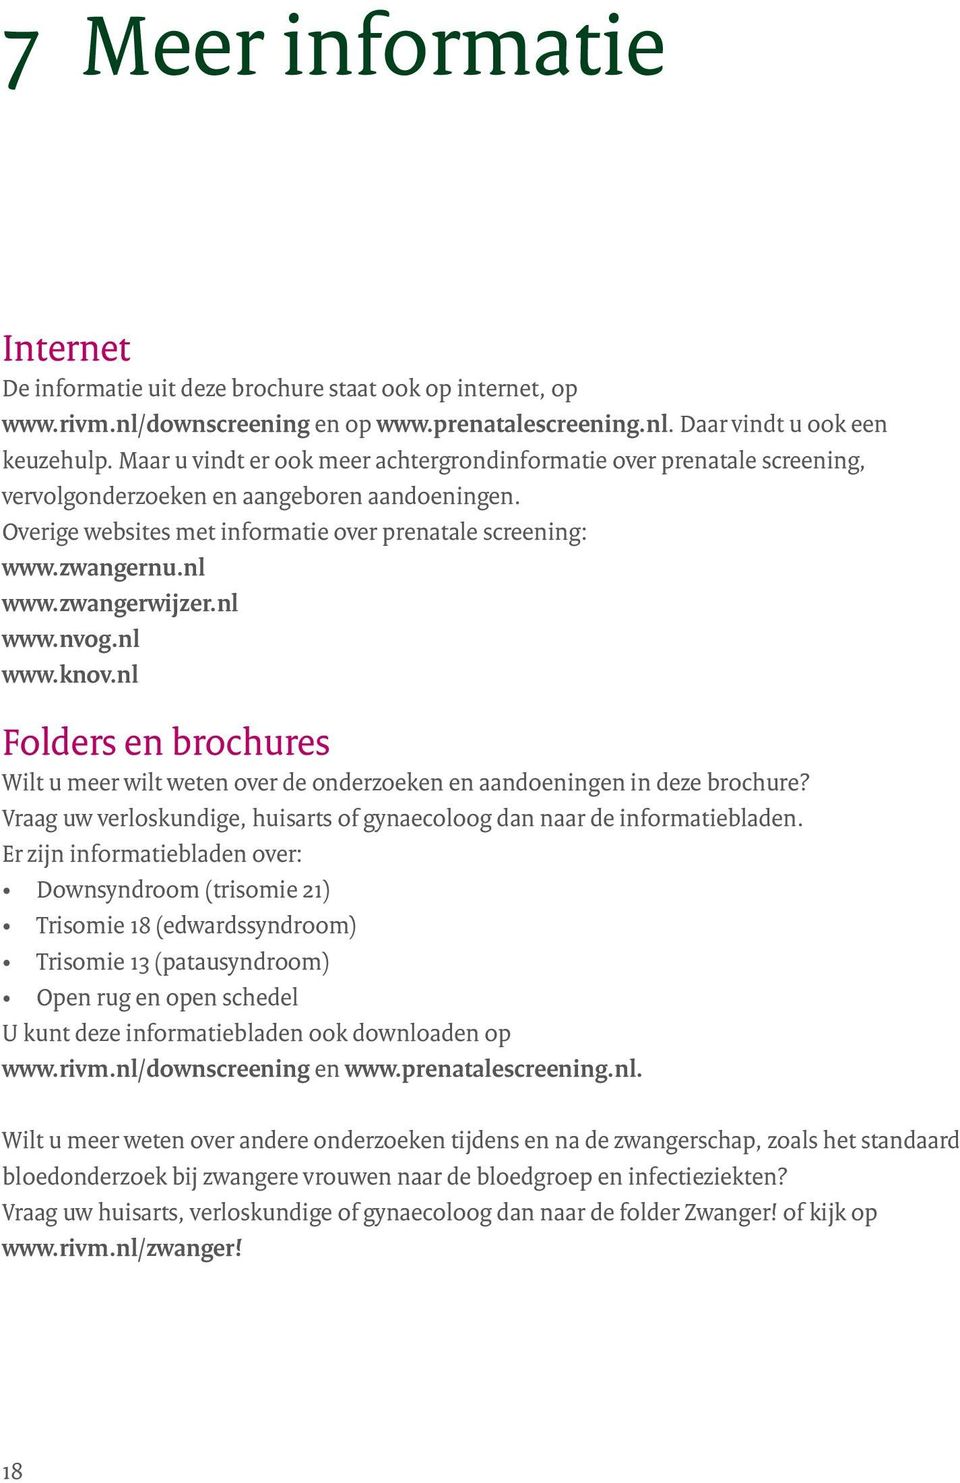 zwangerwijzer.nl www.nvog.nl www.knov.nl Folders en brochures Wilt u meer wilt weten over de onderzoeken en aandoeningen in deze brochure?